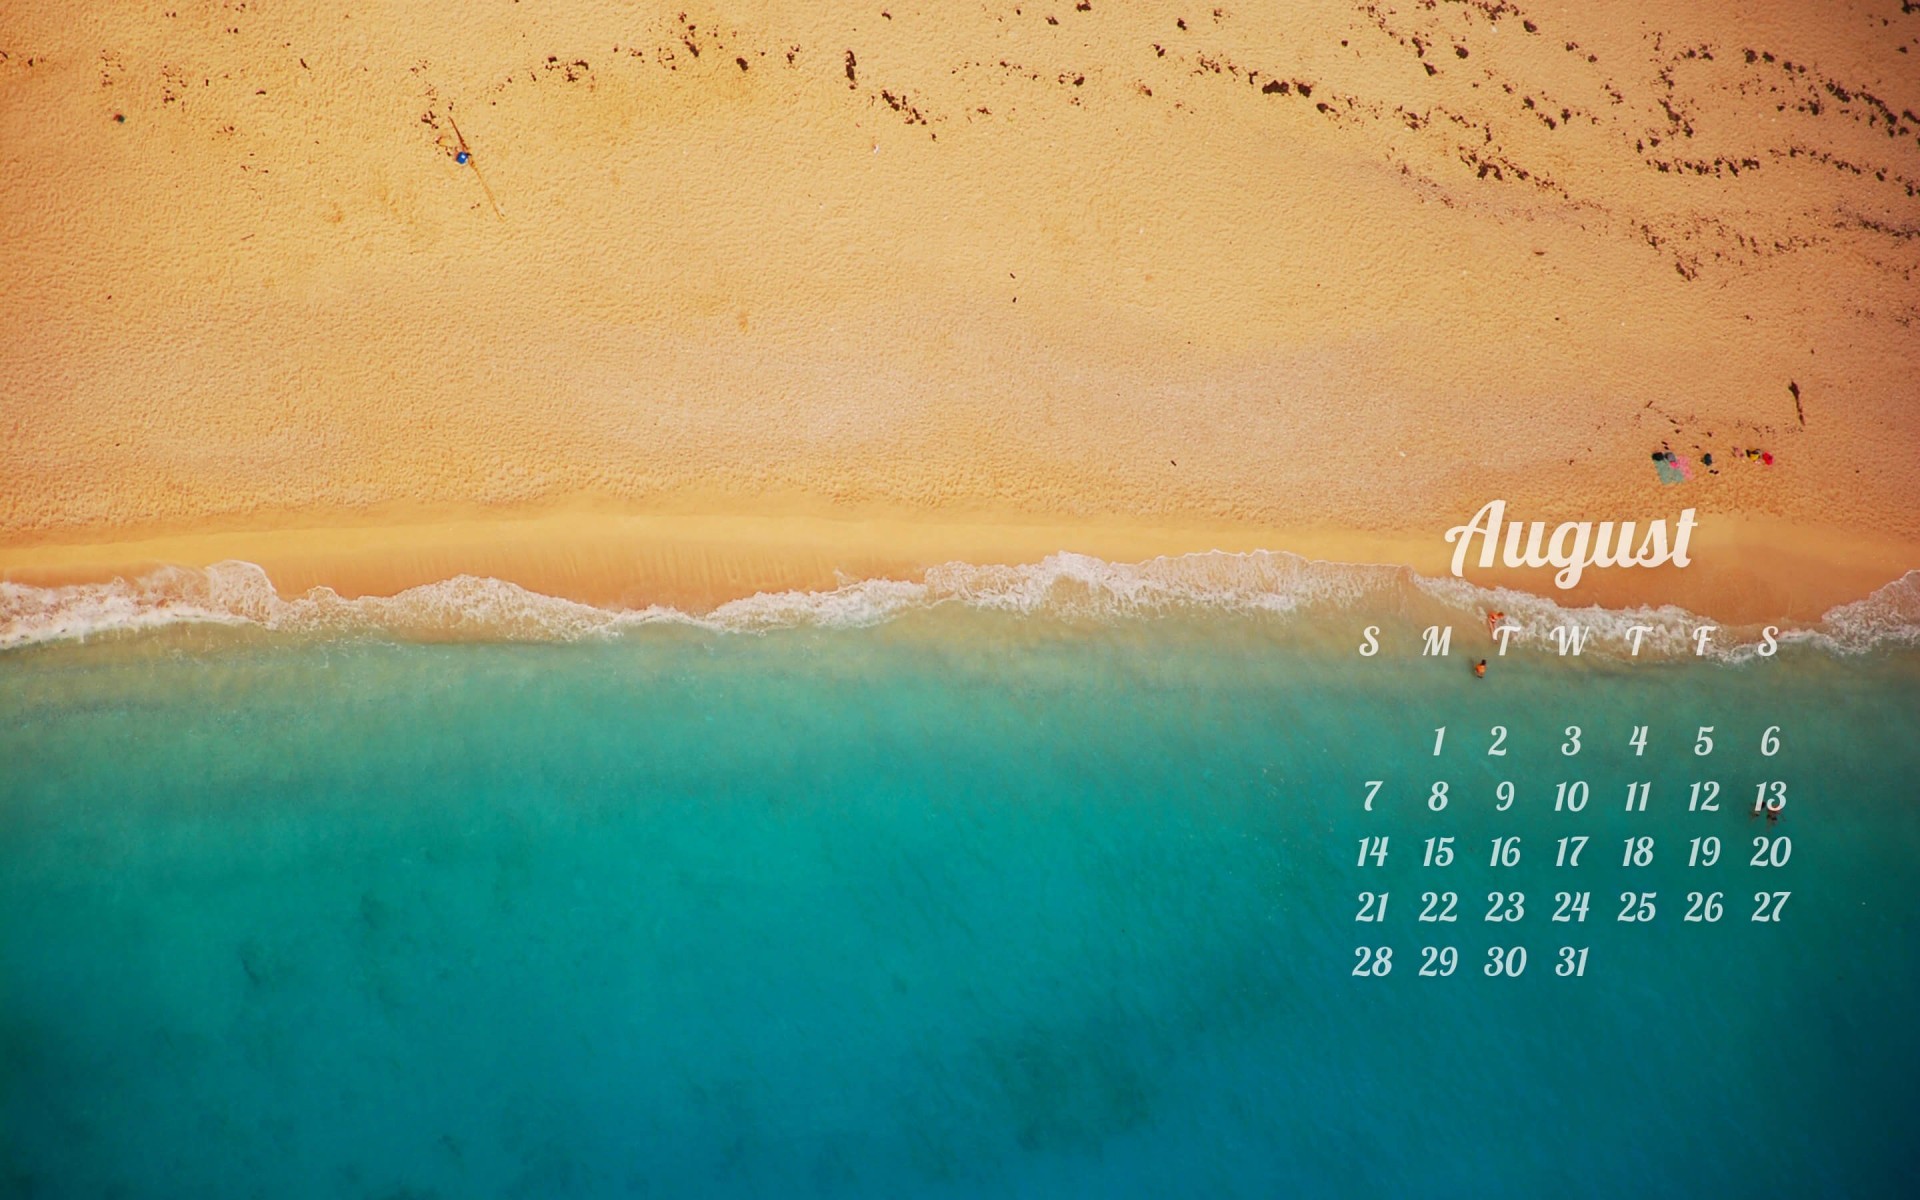 August 2016 Calendar Wallpaper for Desktop 1920x1200